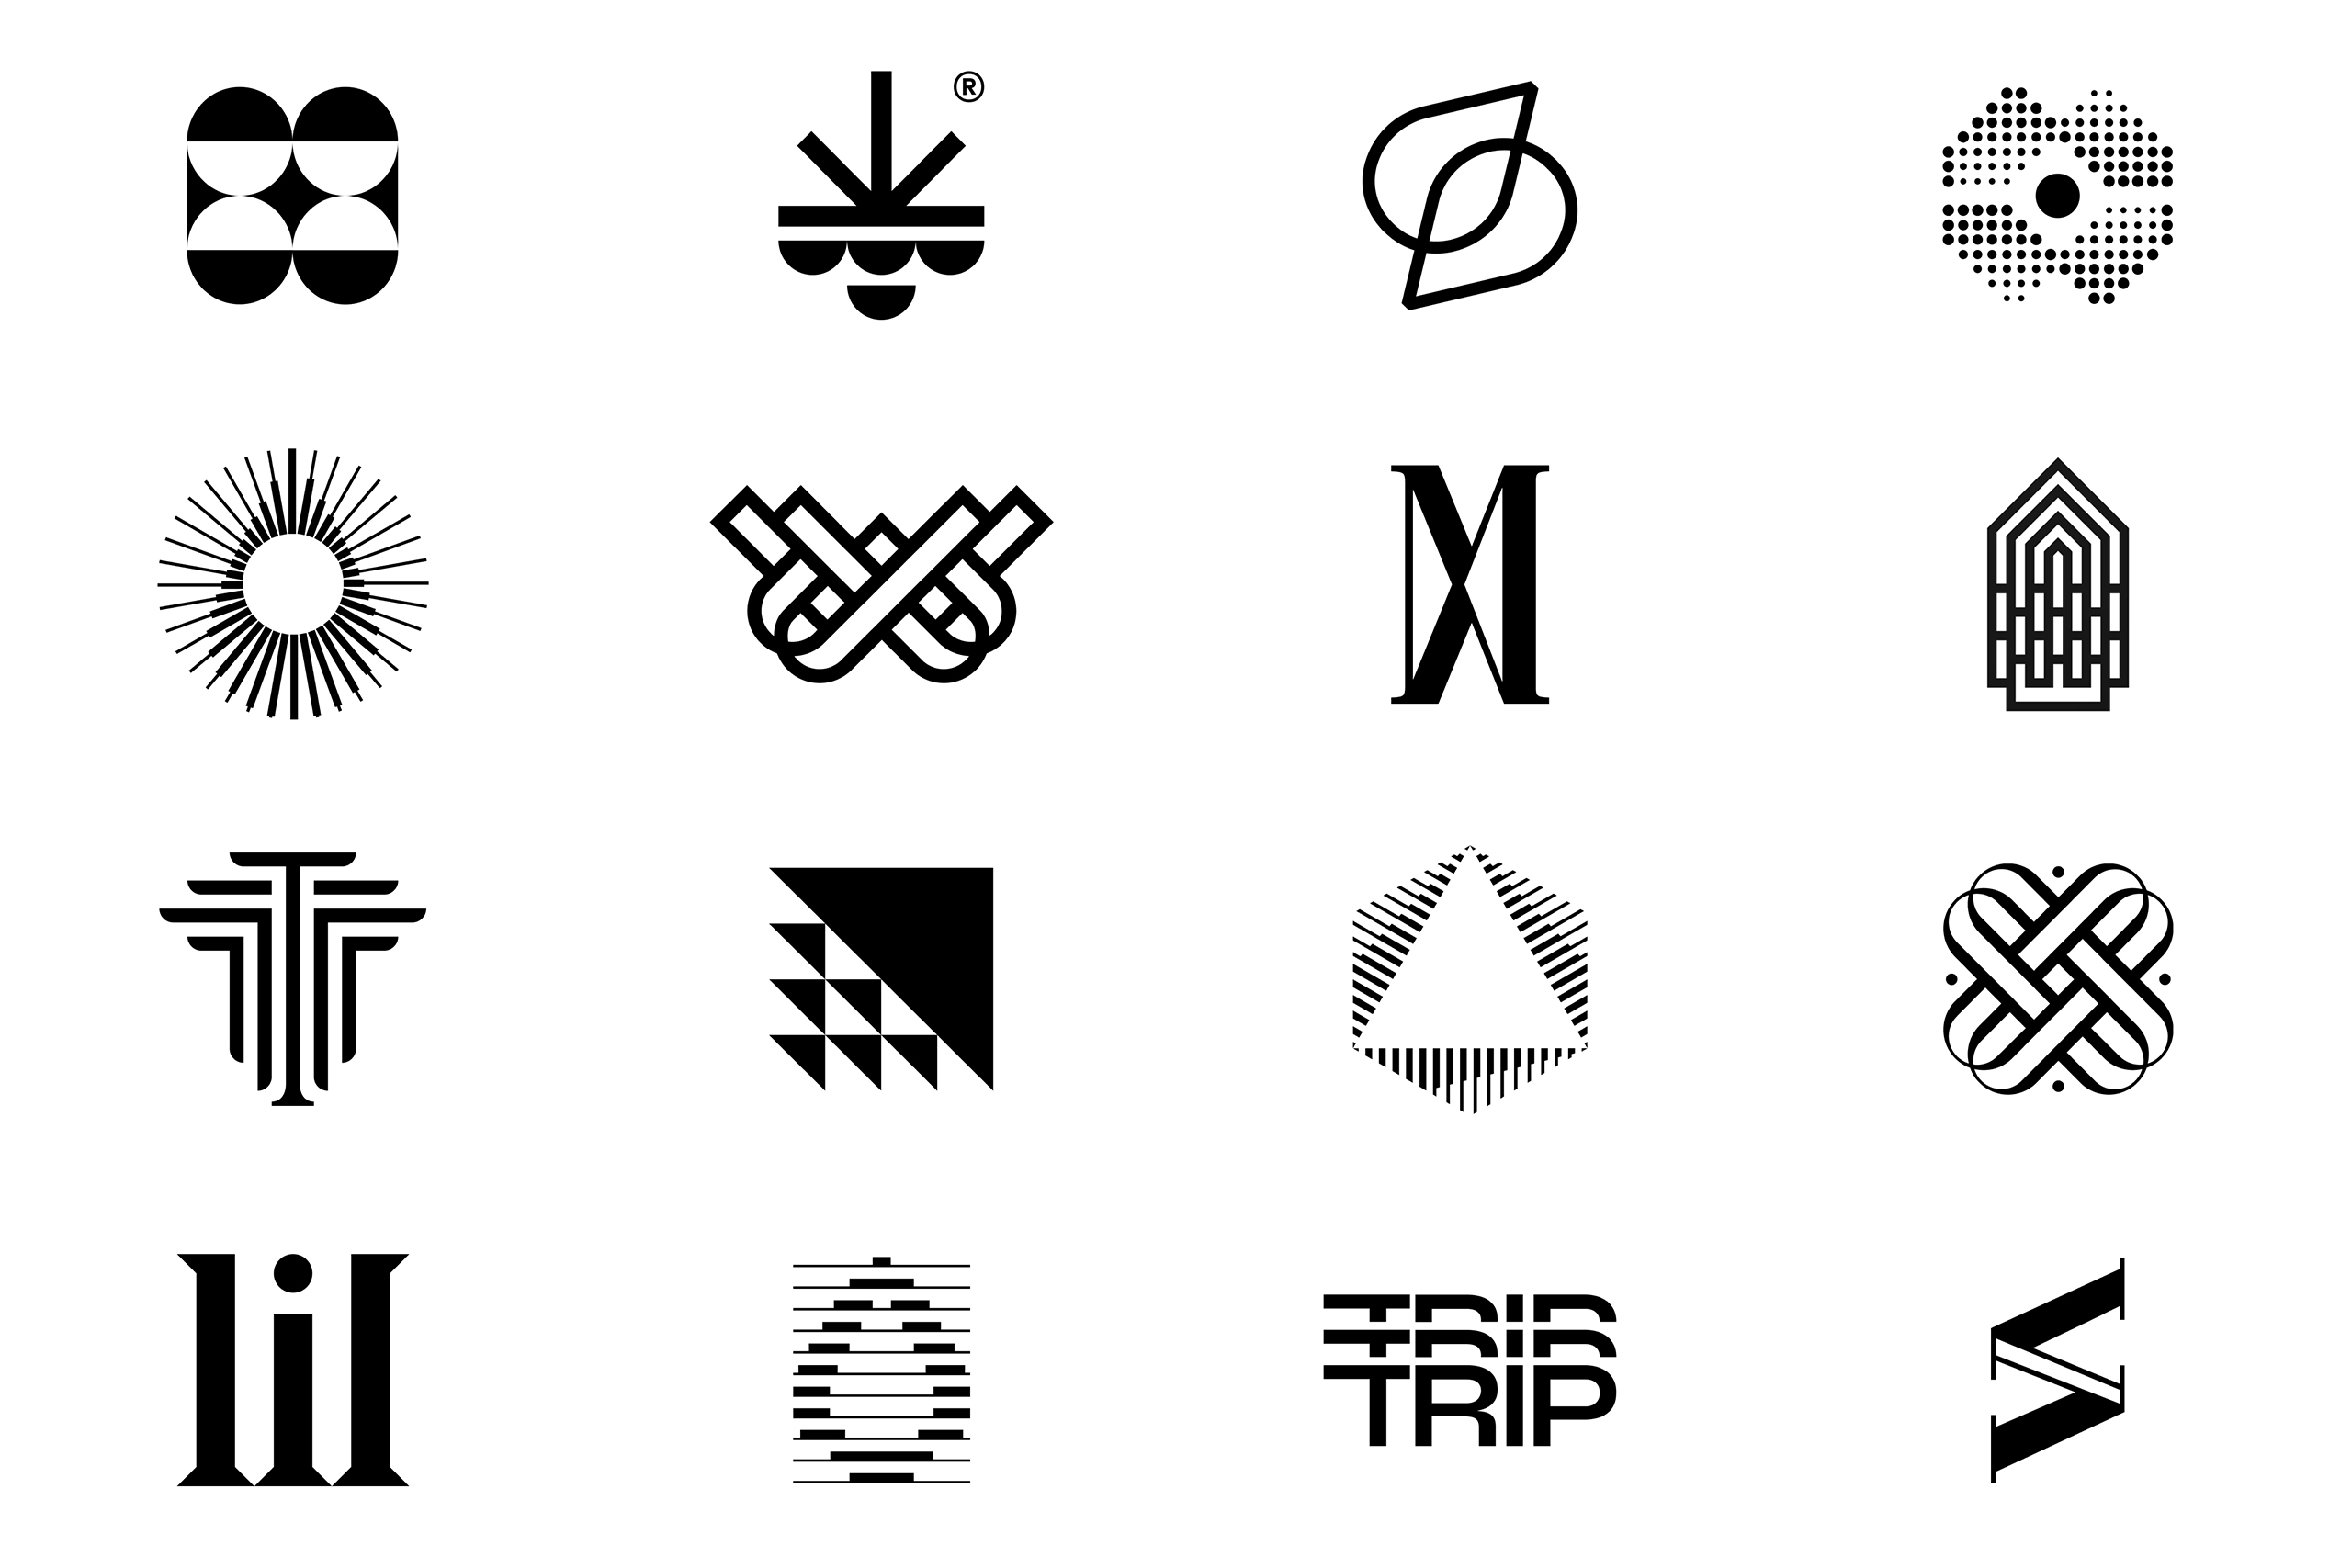 All Symbols